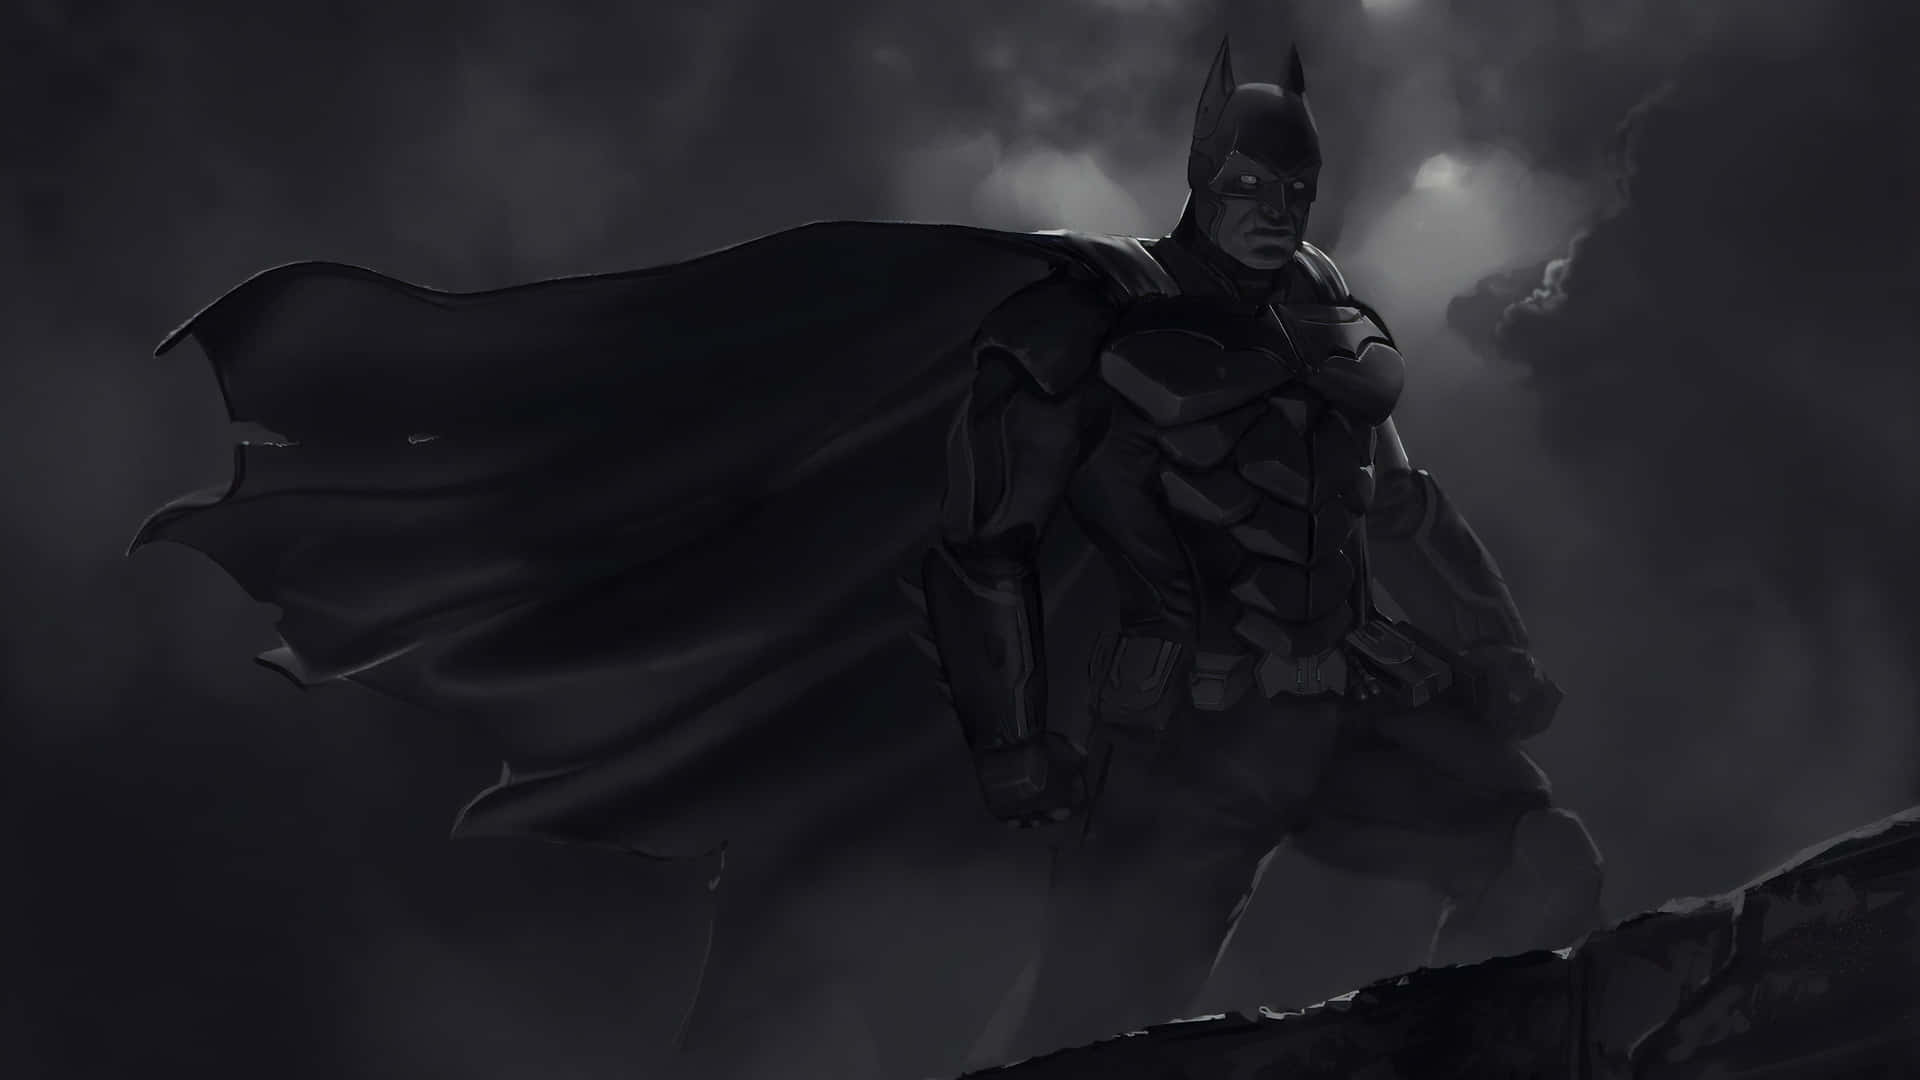 Ikoniskasuperhjälten Batman I Gråskala Som Bakgrundsbild.